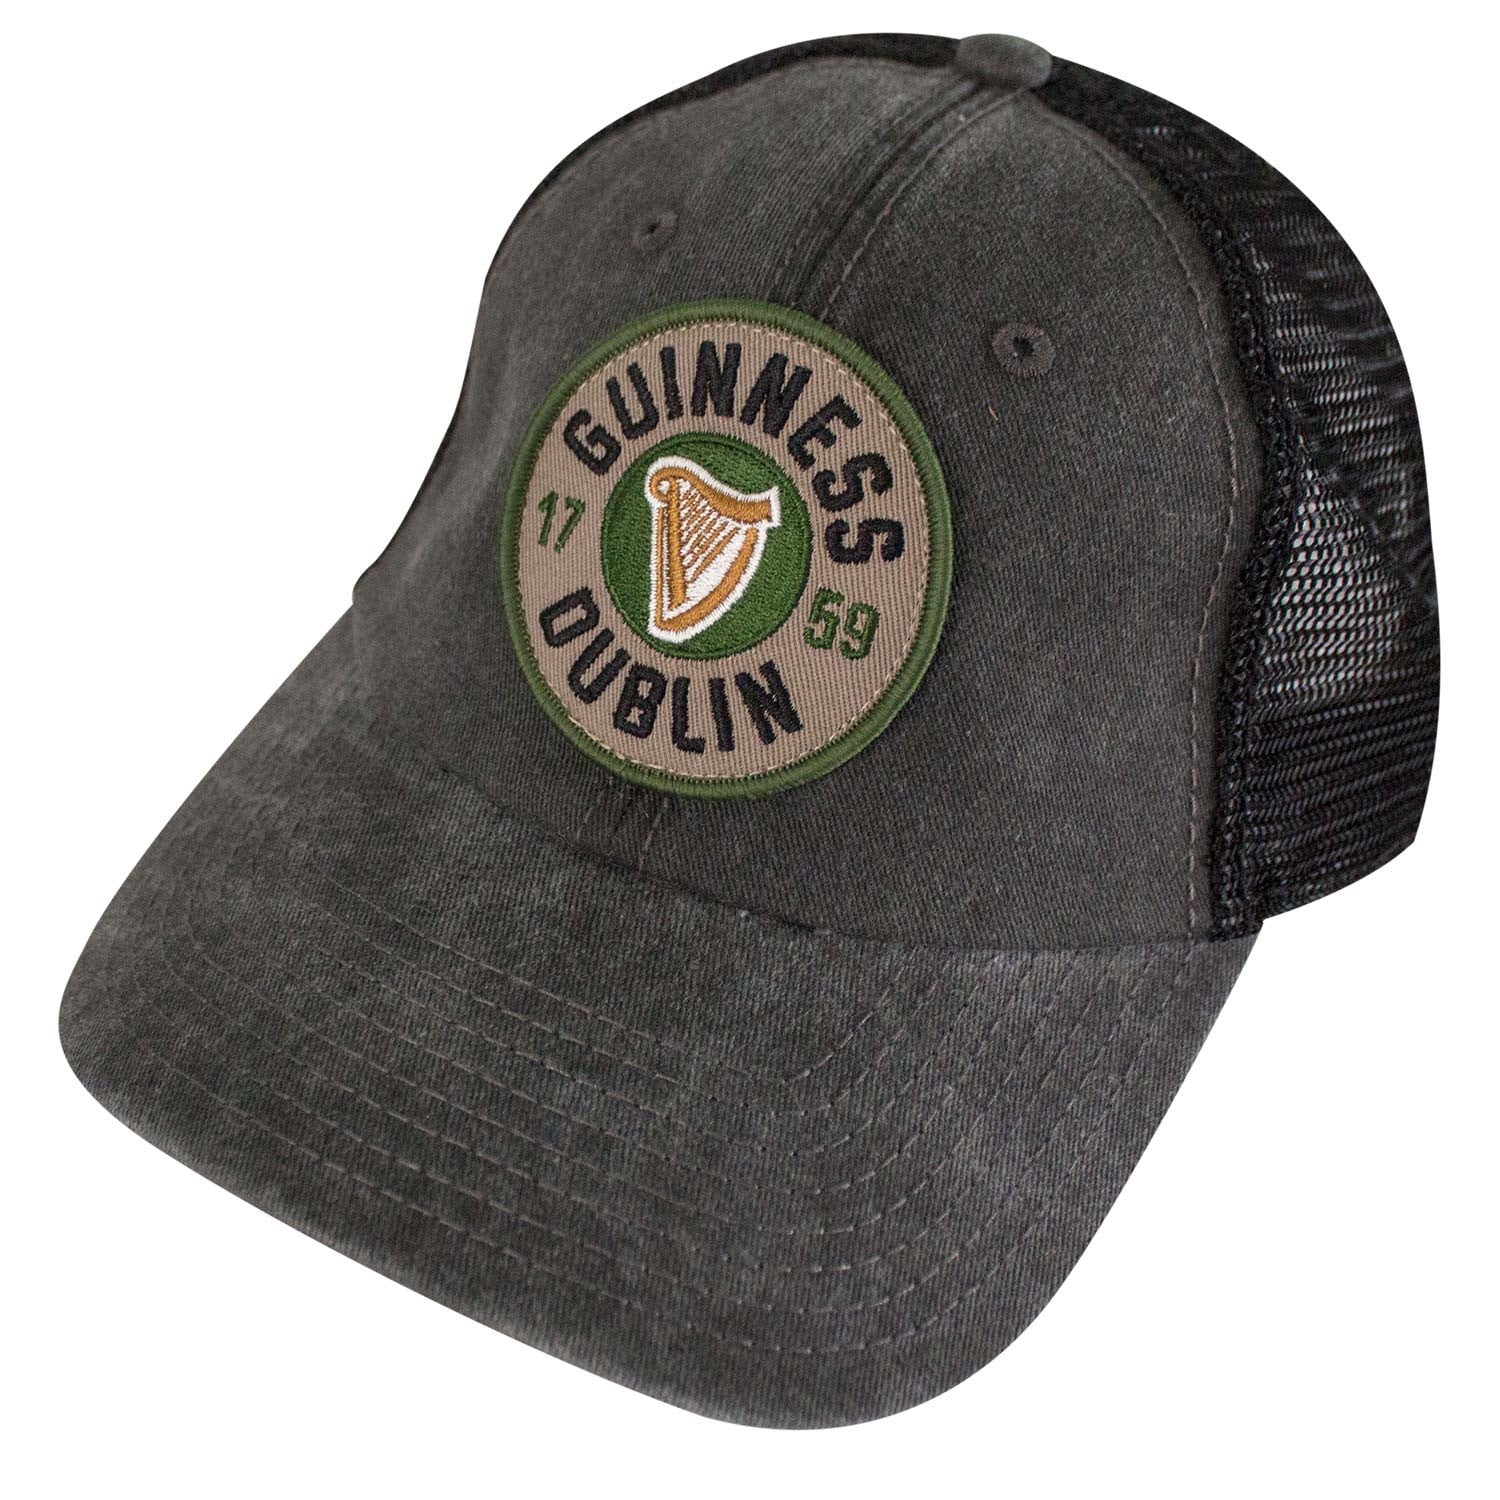 Guinness Black Front White Mesh Back Trucker Hat American Needle New Cap 